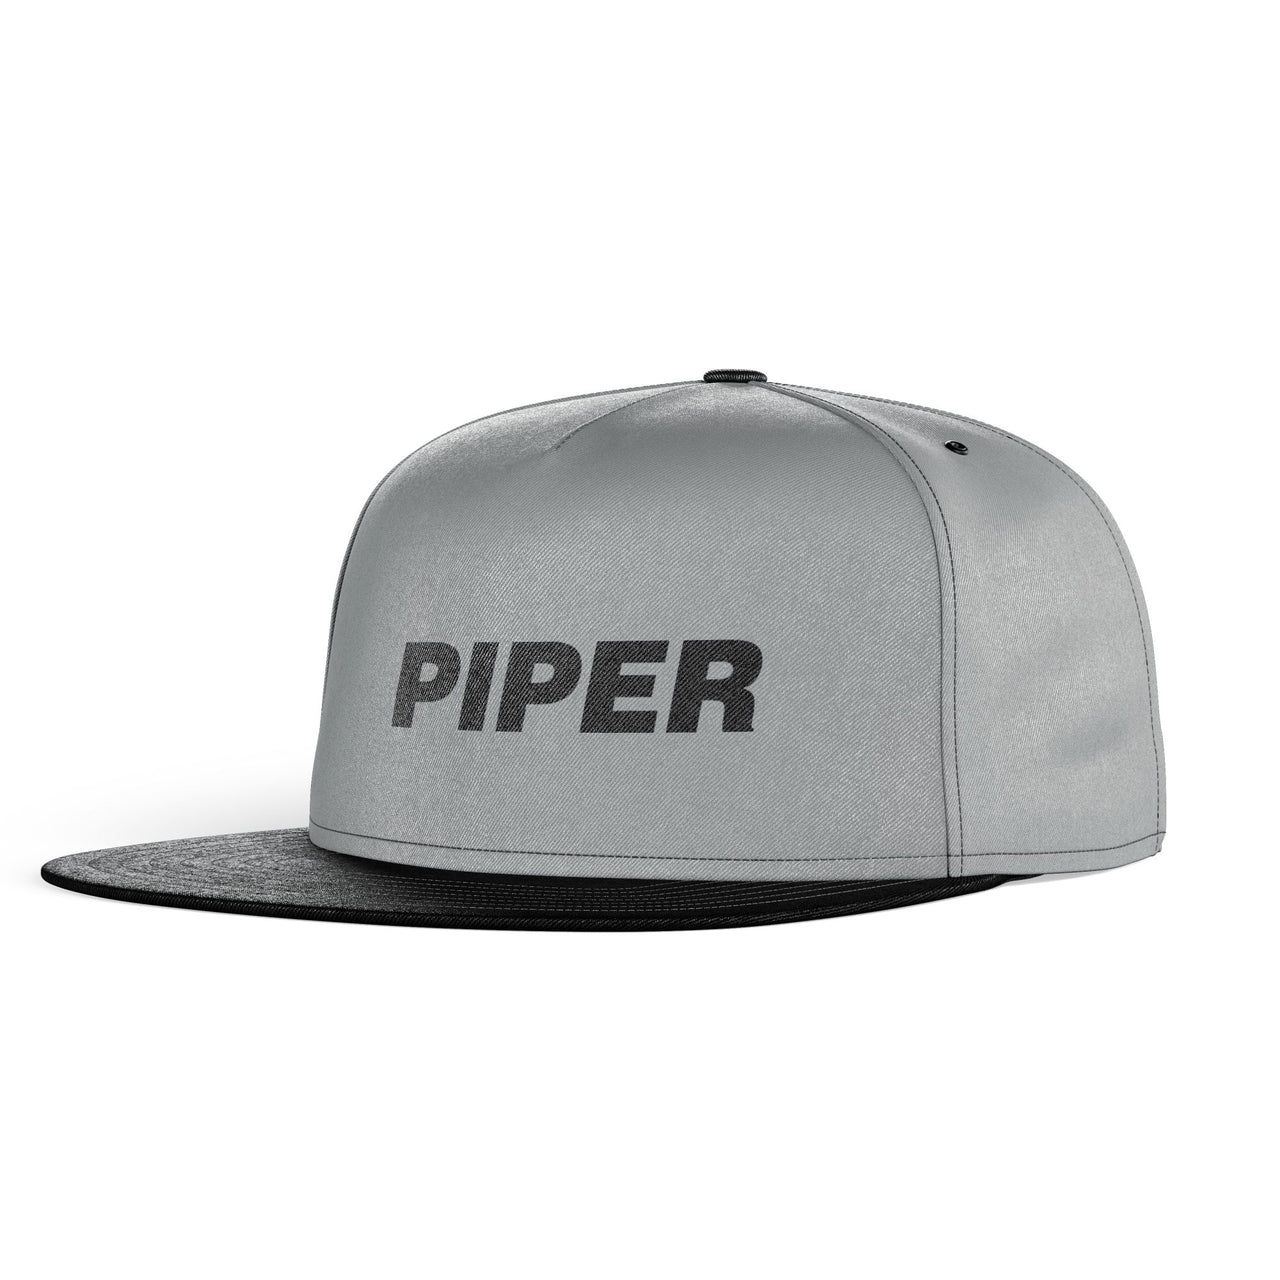 Piper & Text Designed Snapback Caps & Hats